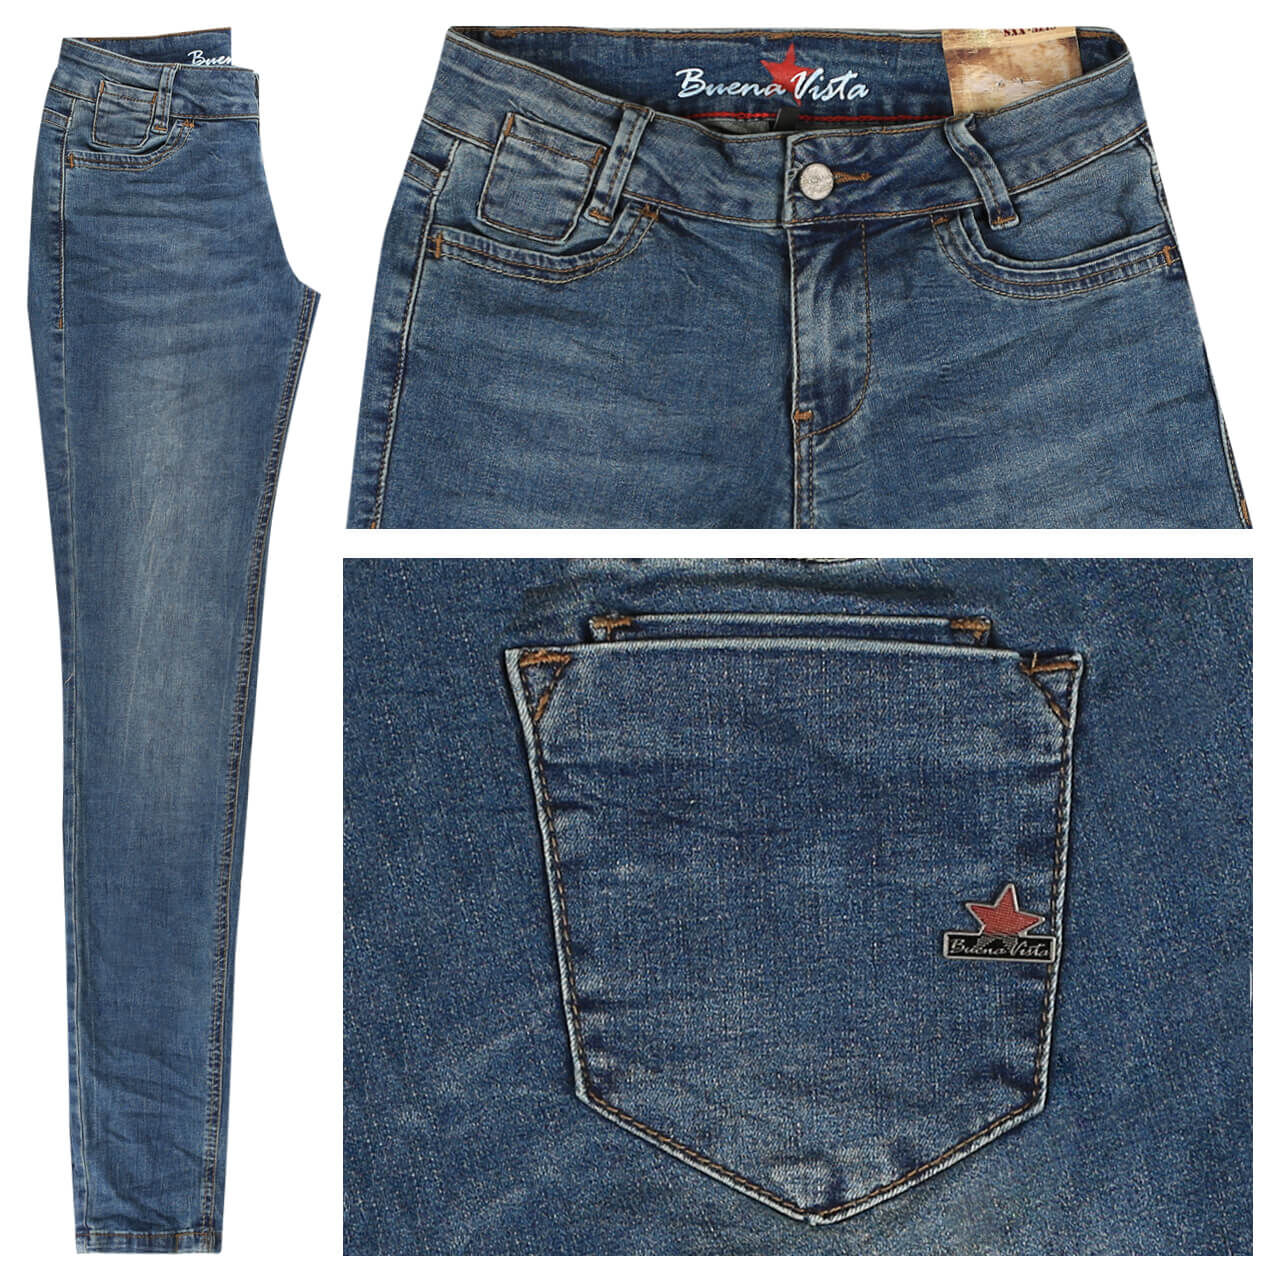 Buena Vista Jeans Kim-Zip Stretch Denim für Damen in Blau angewaschen, FarbNr.: 2883